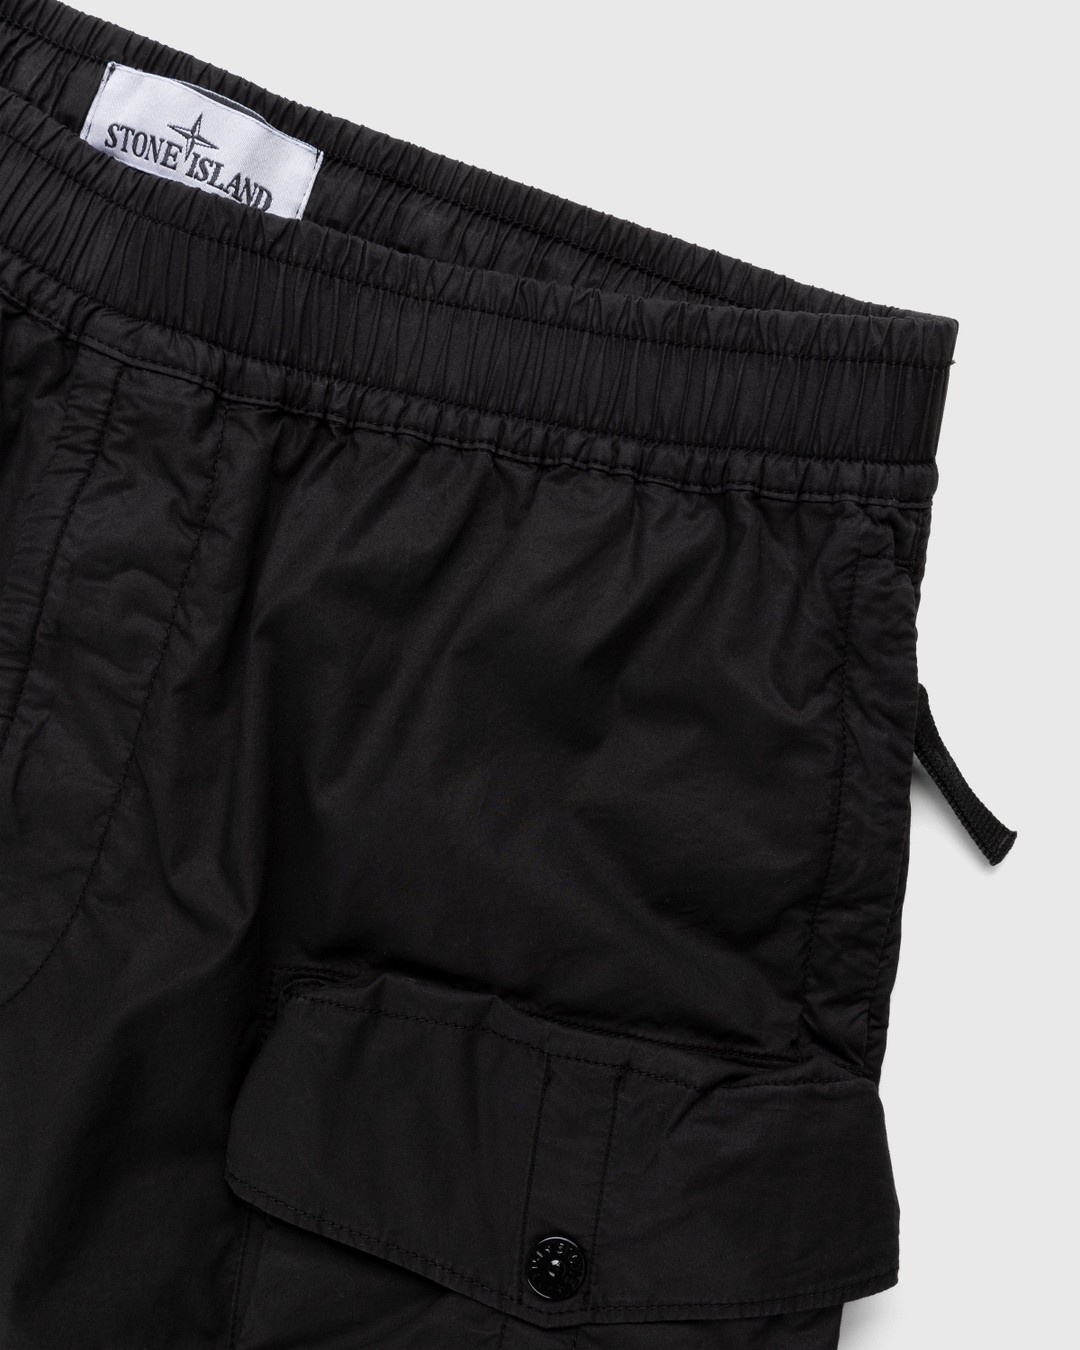 Stone Island – L0103 Garment-Dyed Shorts Black - Shorts - Black - Image 3